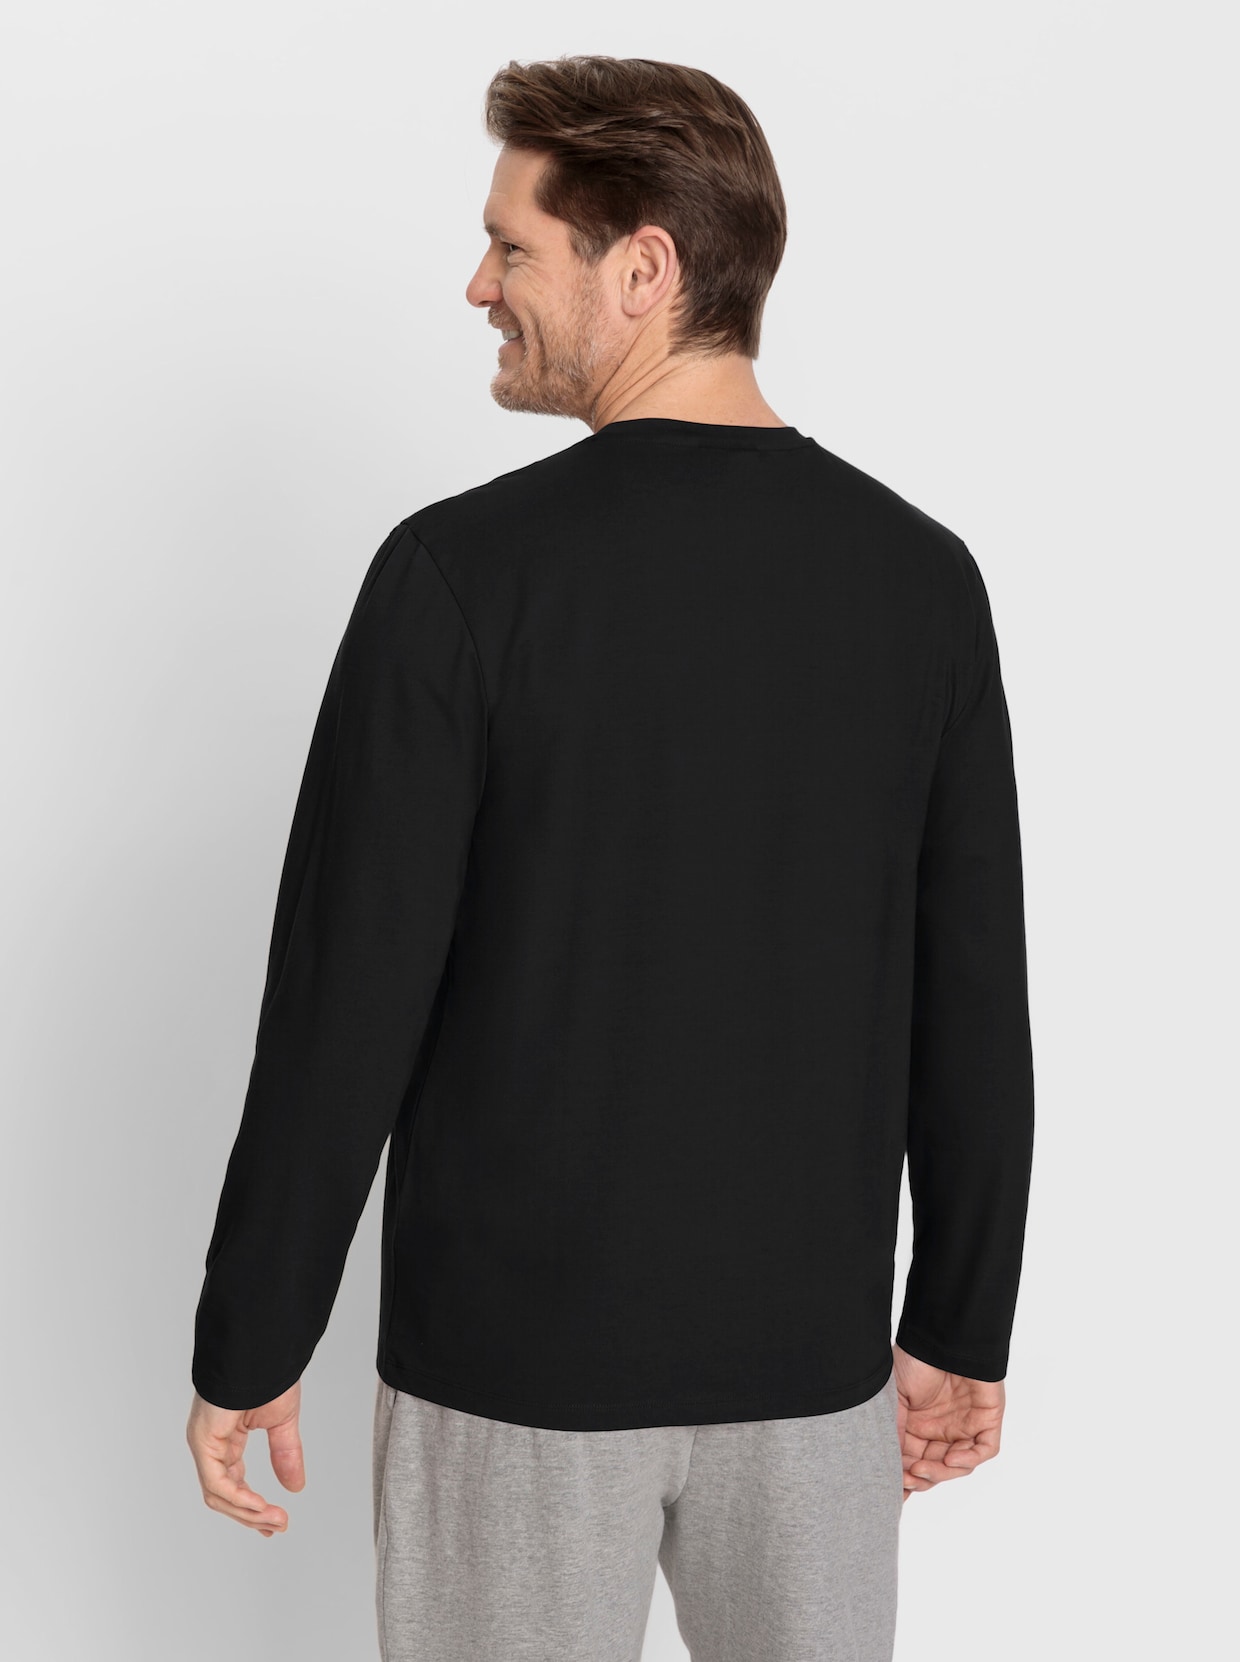 Catamaran Sports Freizeitshirt - schwarz + khaki